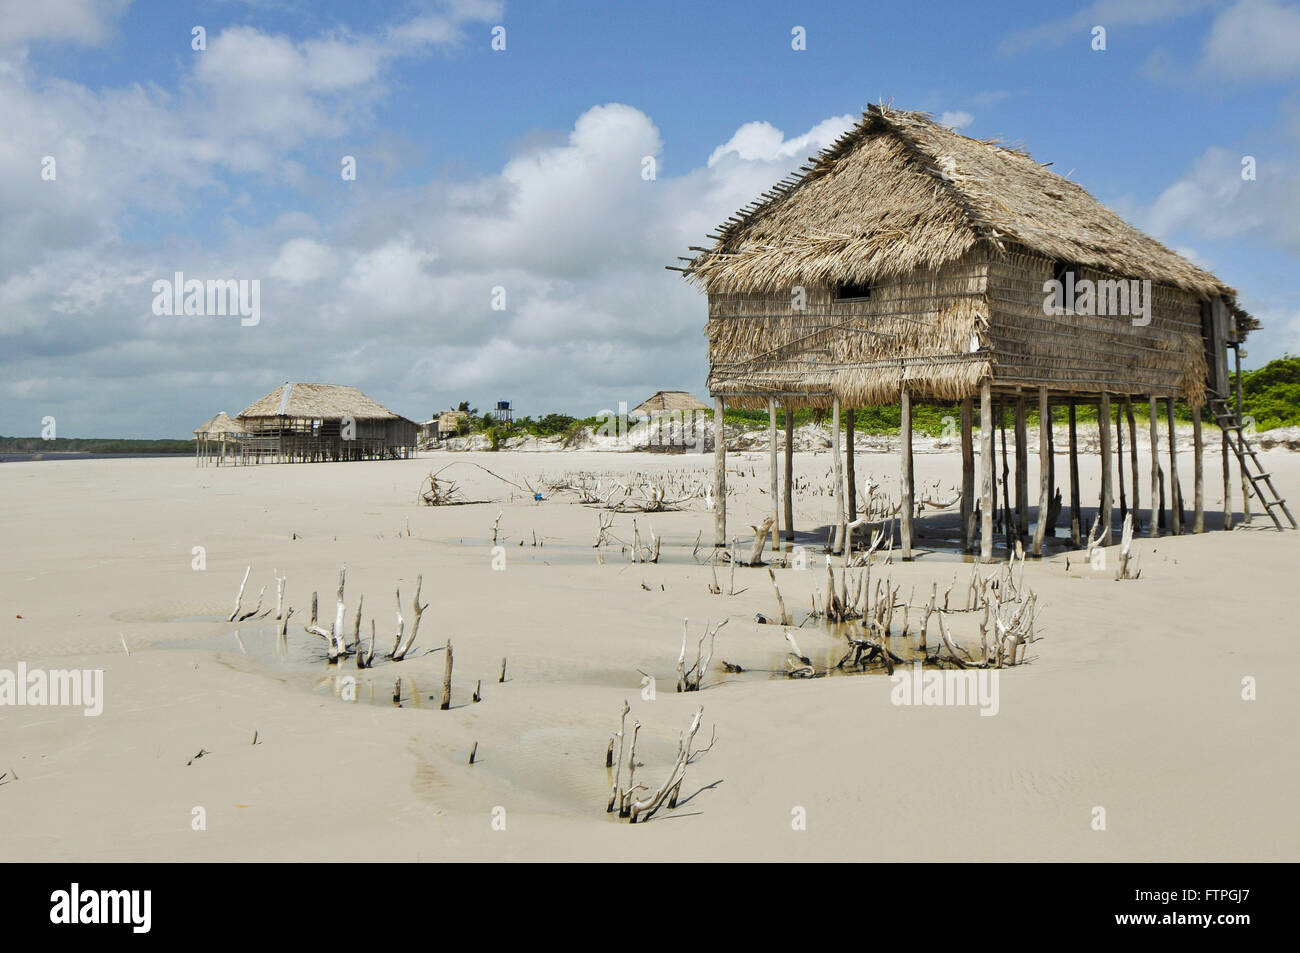 Sape stilt houses on the beach of the Island of Pilao Stock Photo